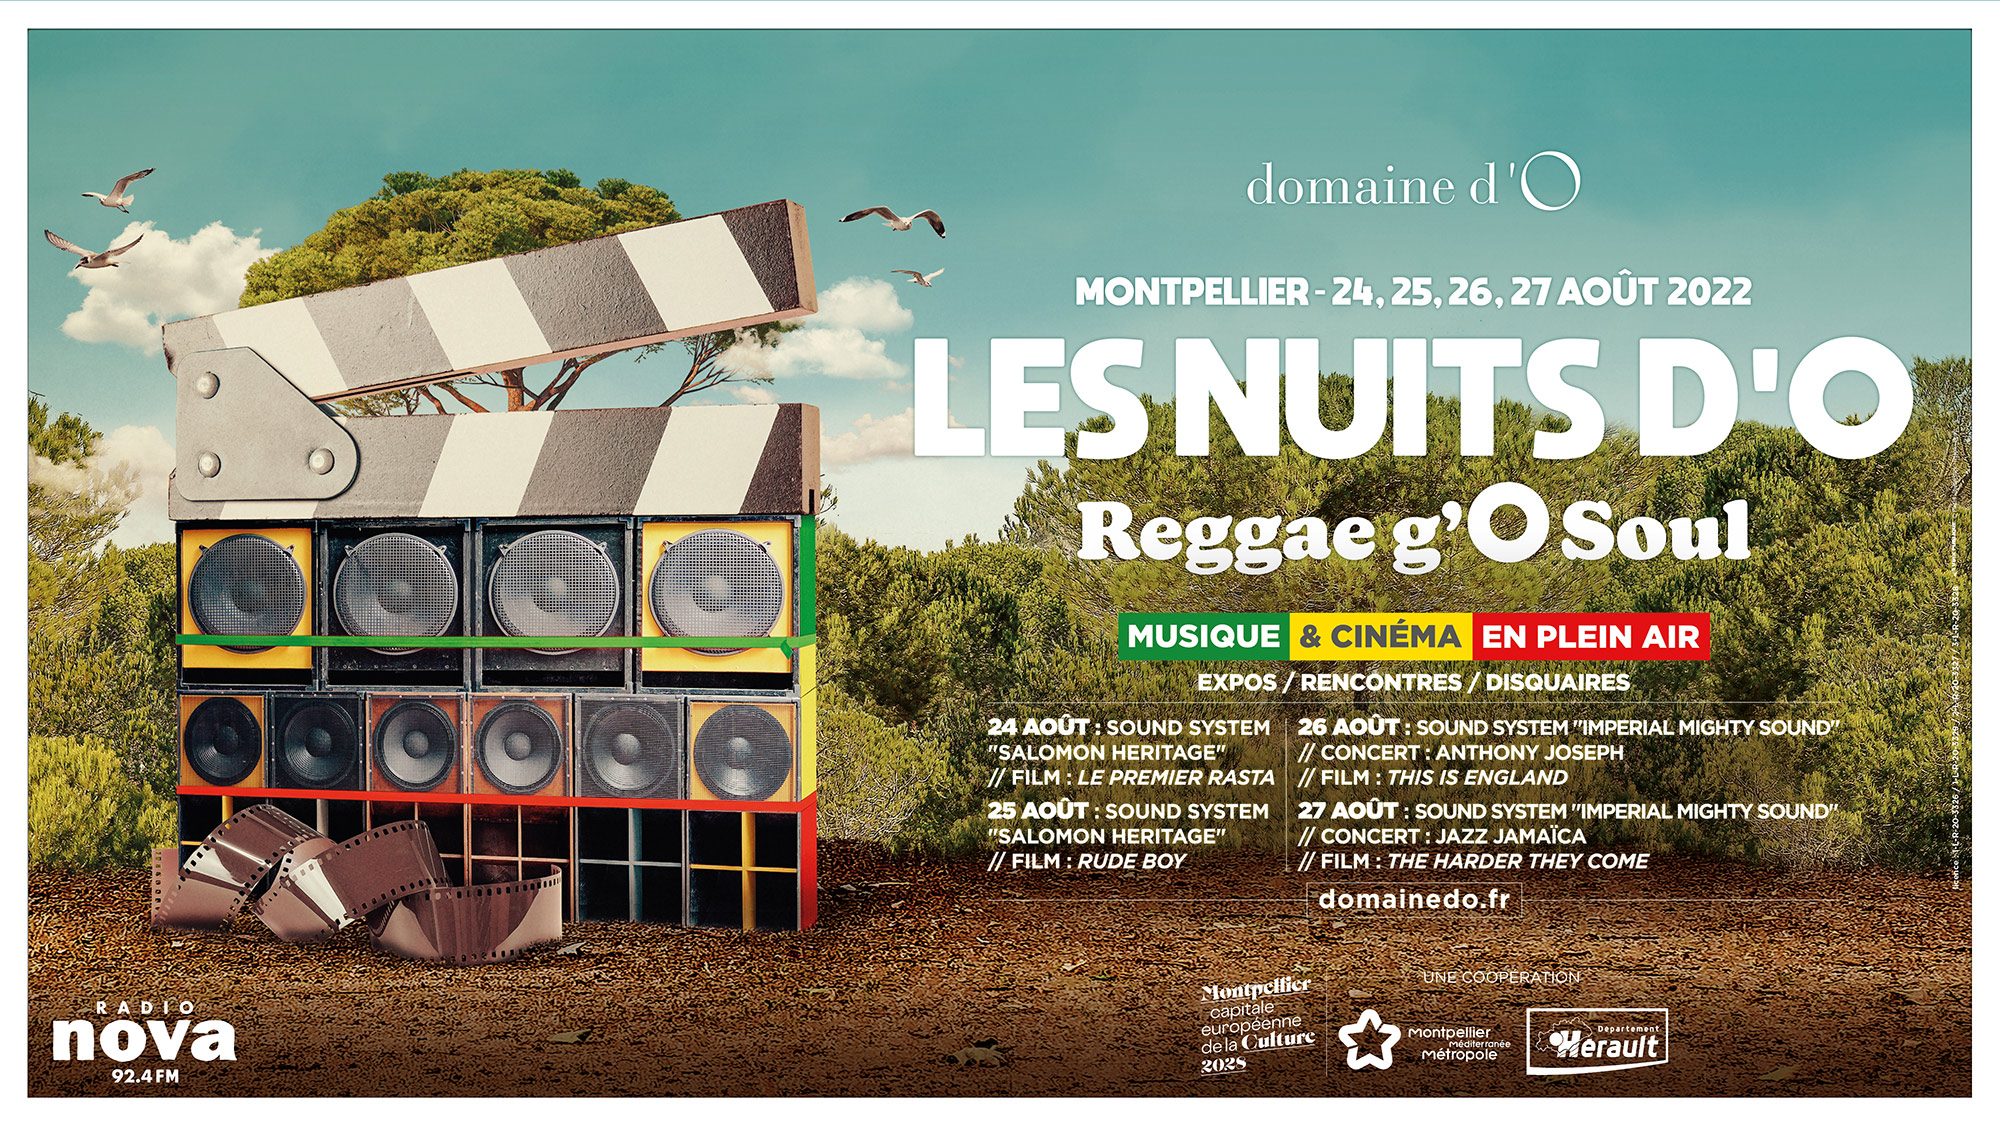 Les Nuits d’O à Montpellier: « Reggae g’O soul » Du 24 au 27 août 22.